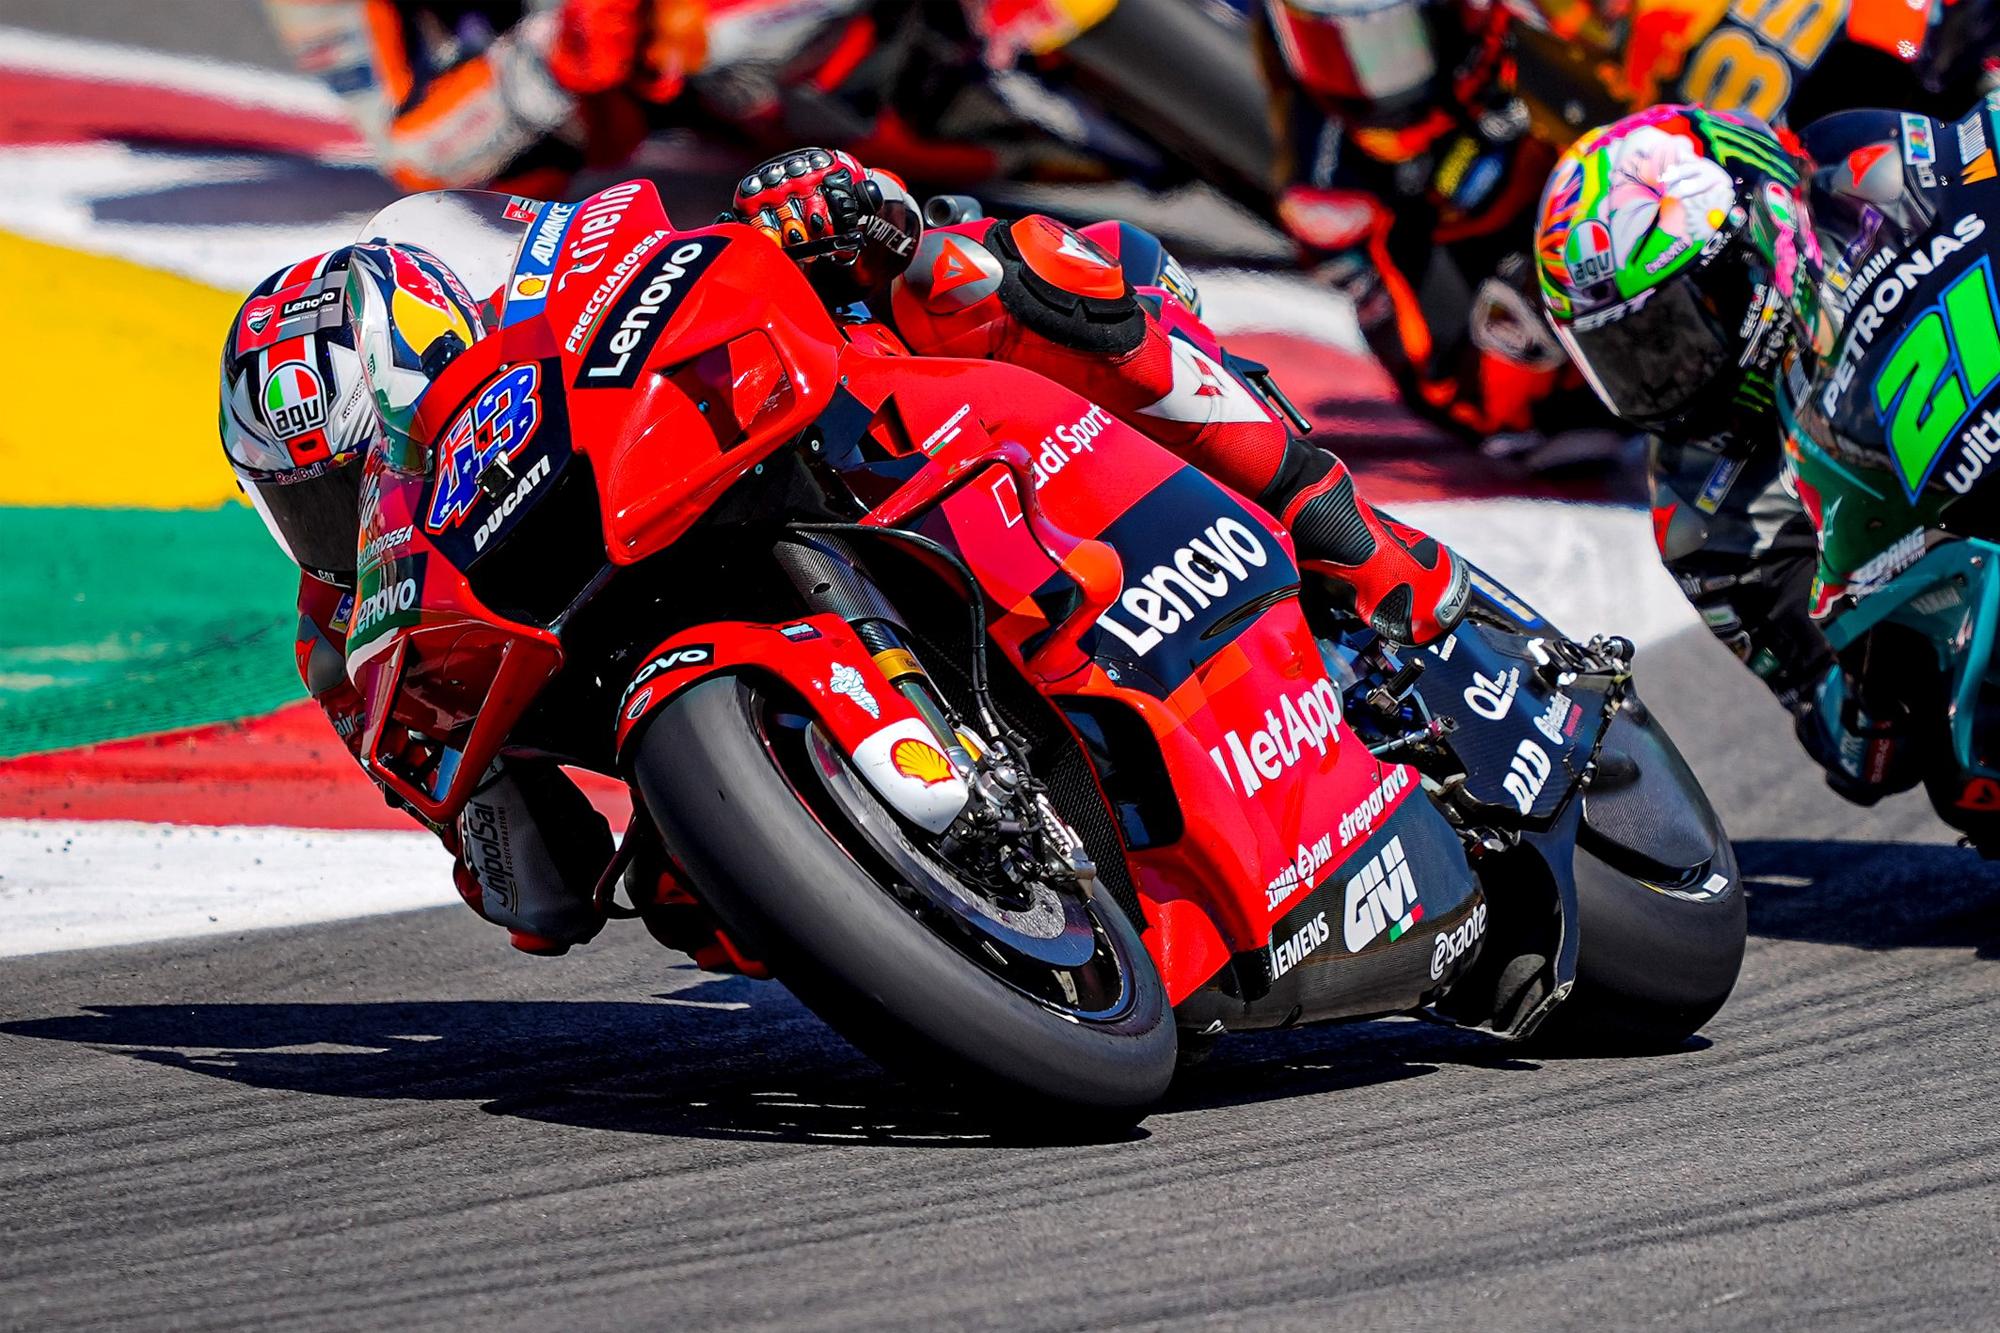 Νέο βάθρο για τη Ducati στο MotoGP Πορτογαλίας